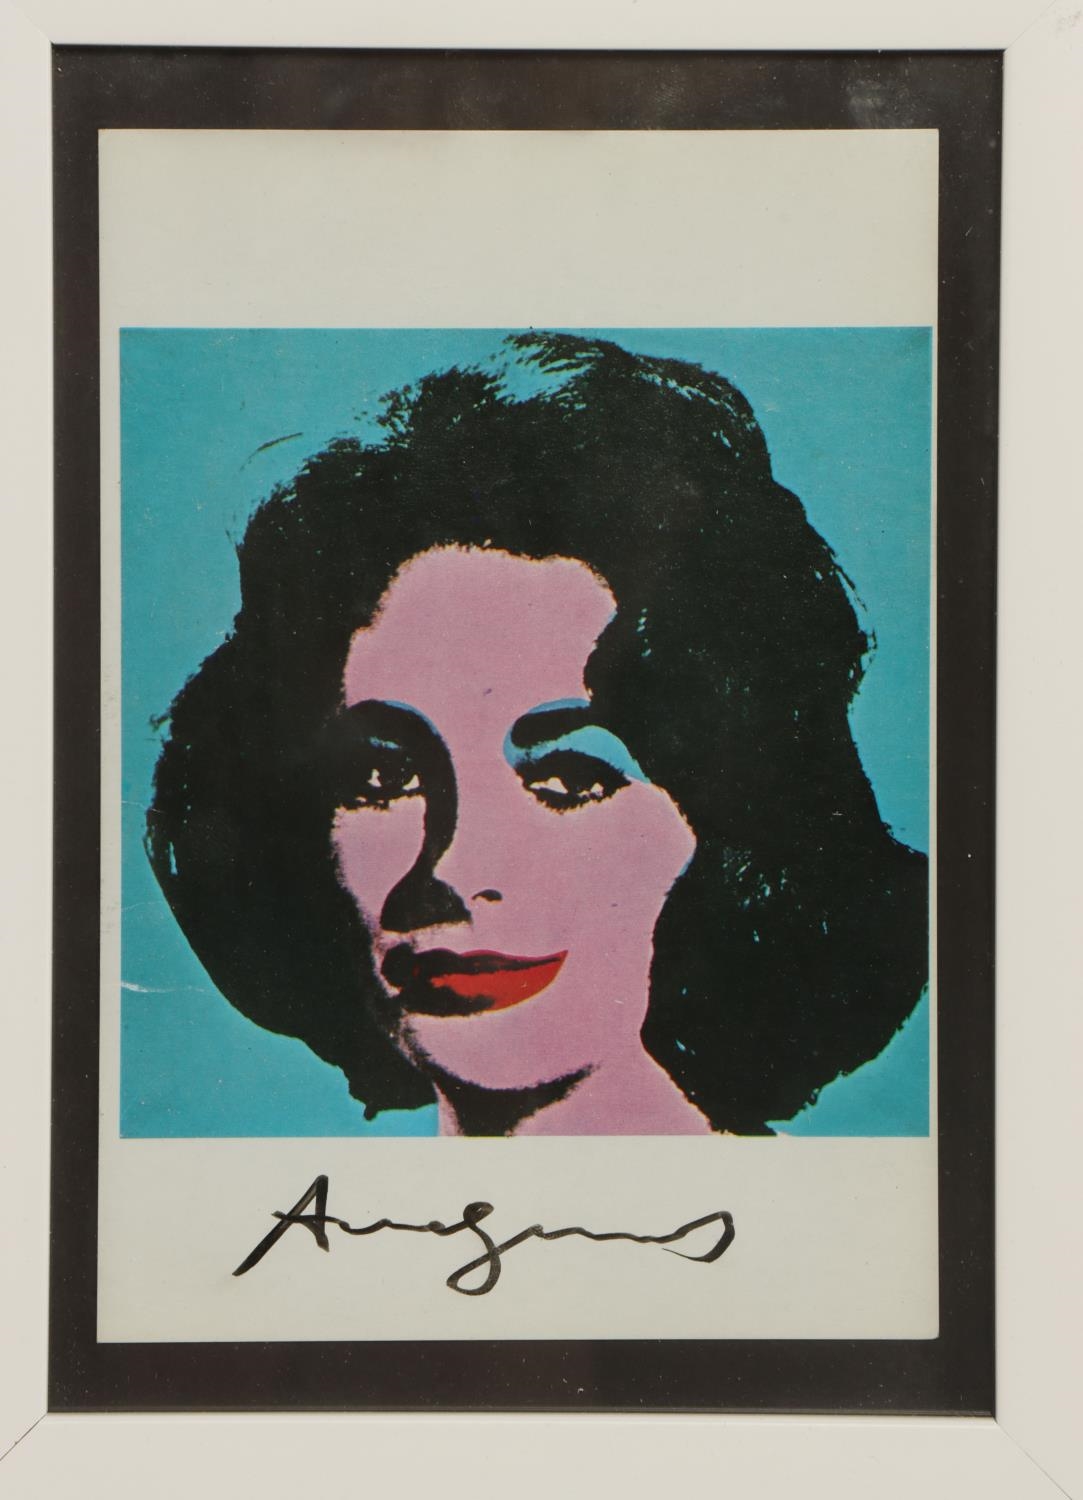 Silk screen print of Elizabeth Taylor by Andy Warhol, 1963